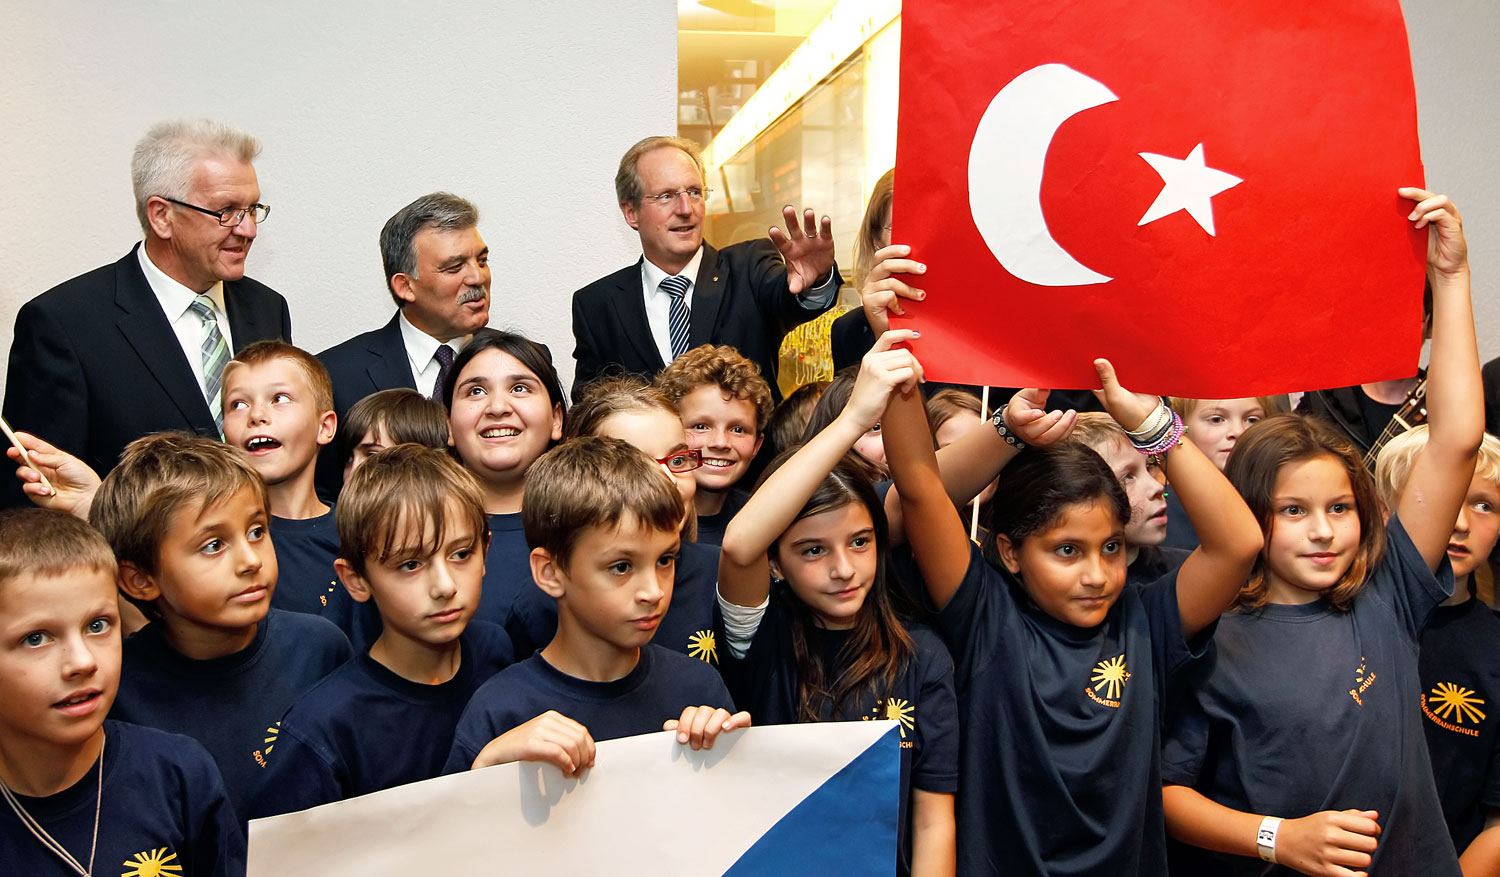 Egyenlő esély a gyerekeknek: Kretschmann baden-württembergi miniszterelnök, Gül török államfő és Schuster stuttgarti főpolgármester